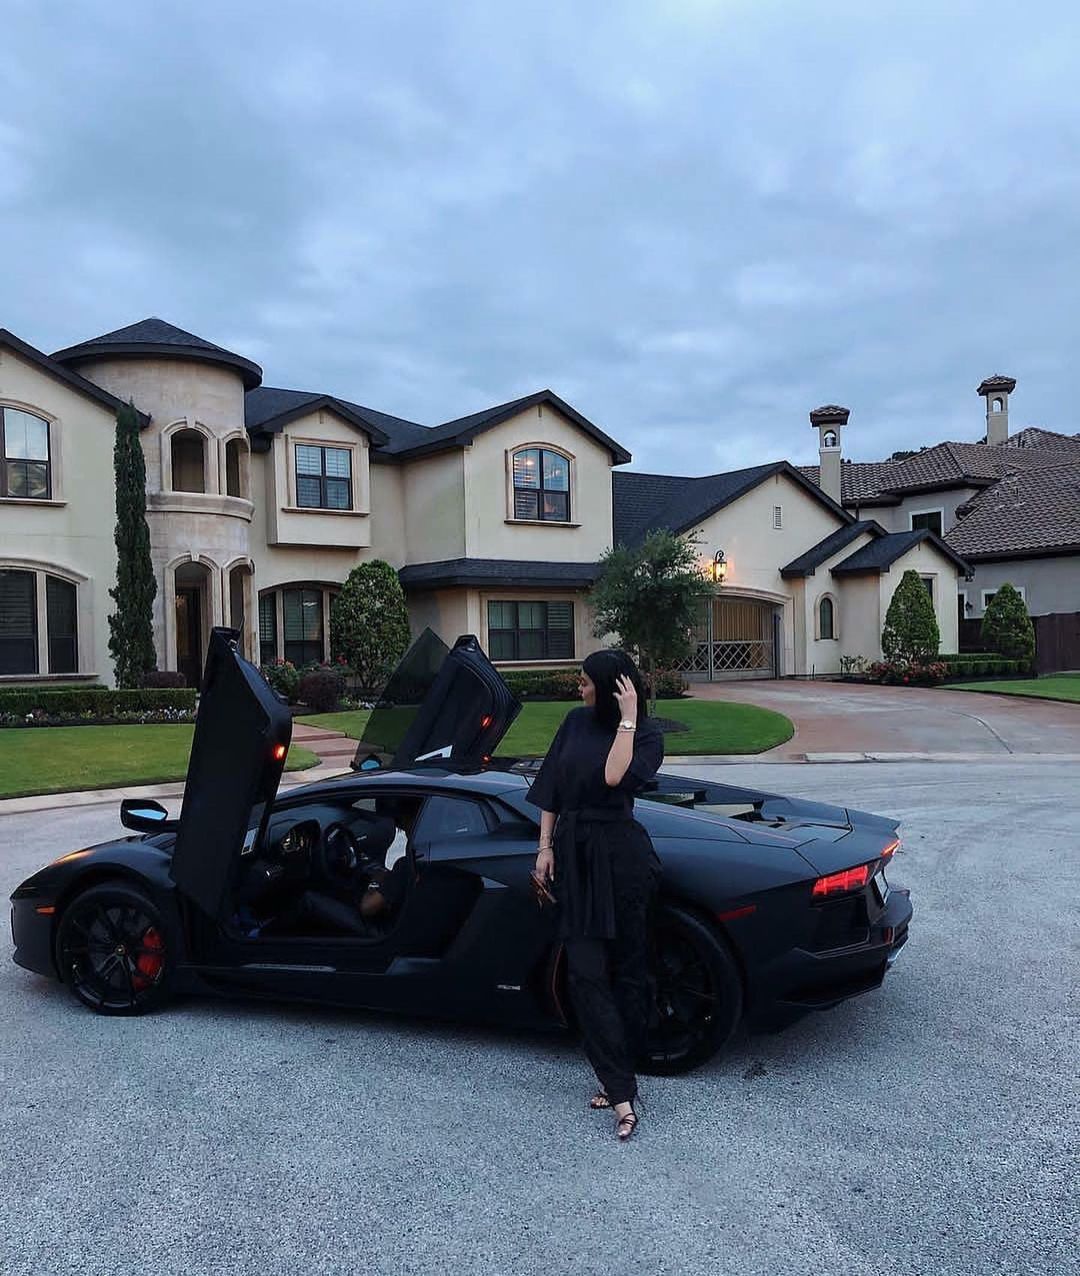 كايلى جينر مع سيارتها السوداء